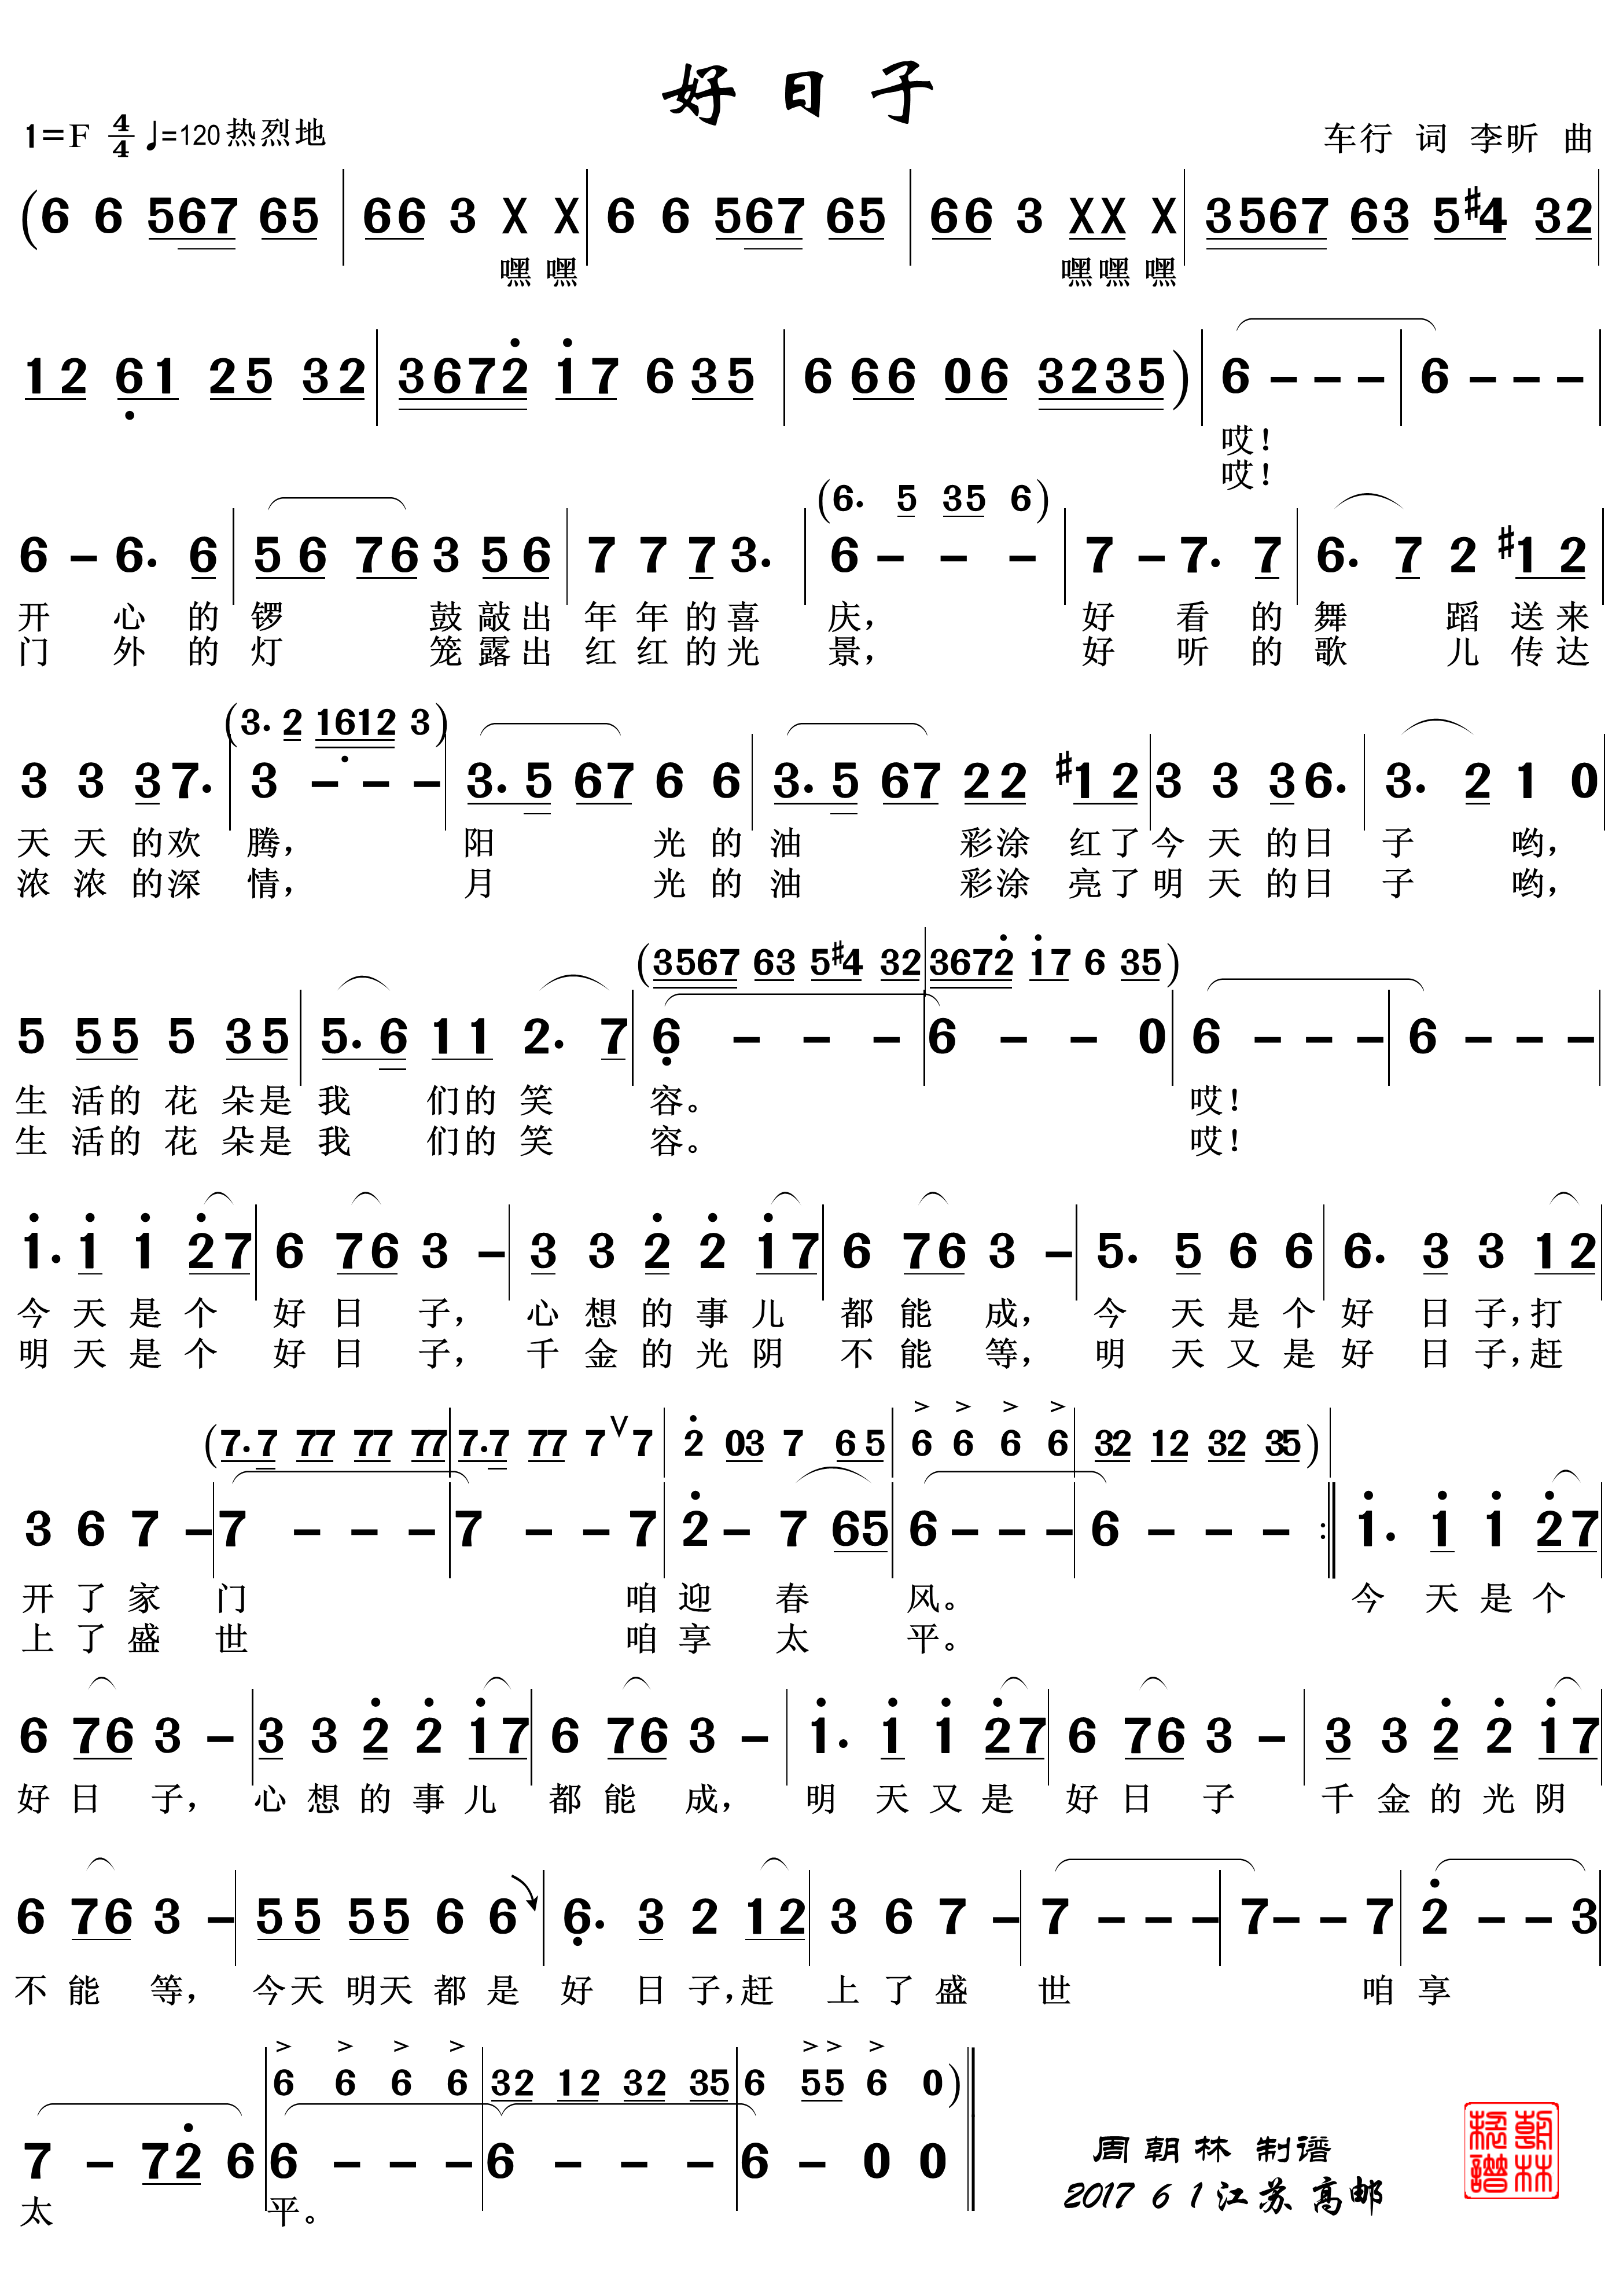 好日子-李知恩双手简谱预览1-钢琴谱文件（五线谱、双手简谱、数字谱、Midi、PDF）免费下载